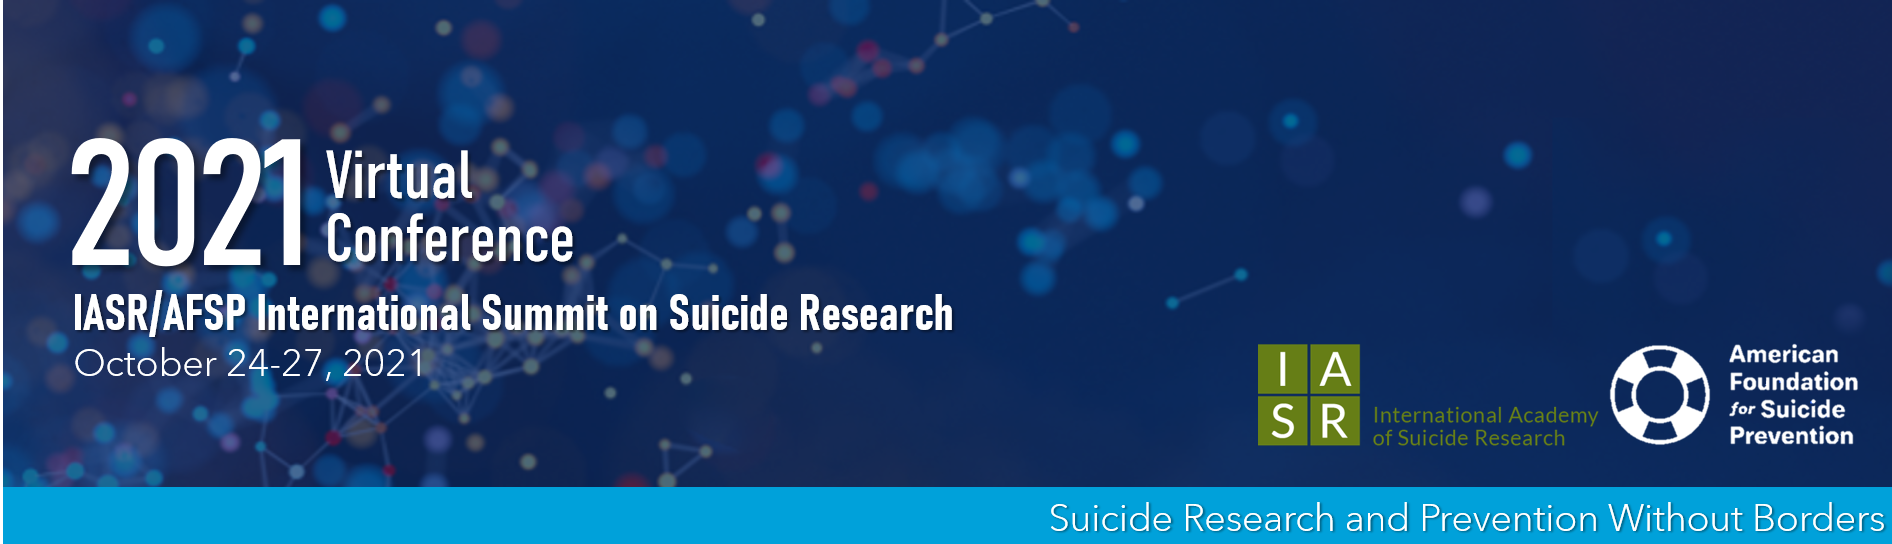 Suicide Research Summit 2021 (IASR / AFSP)